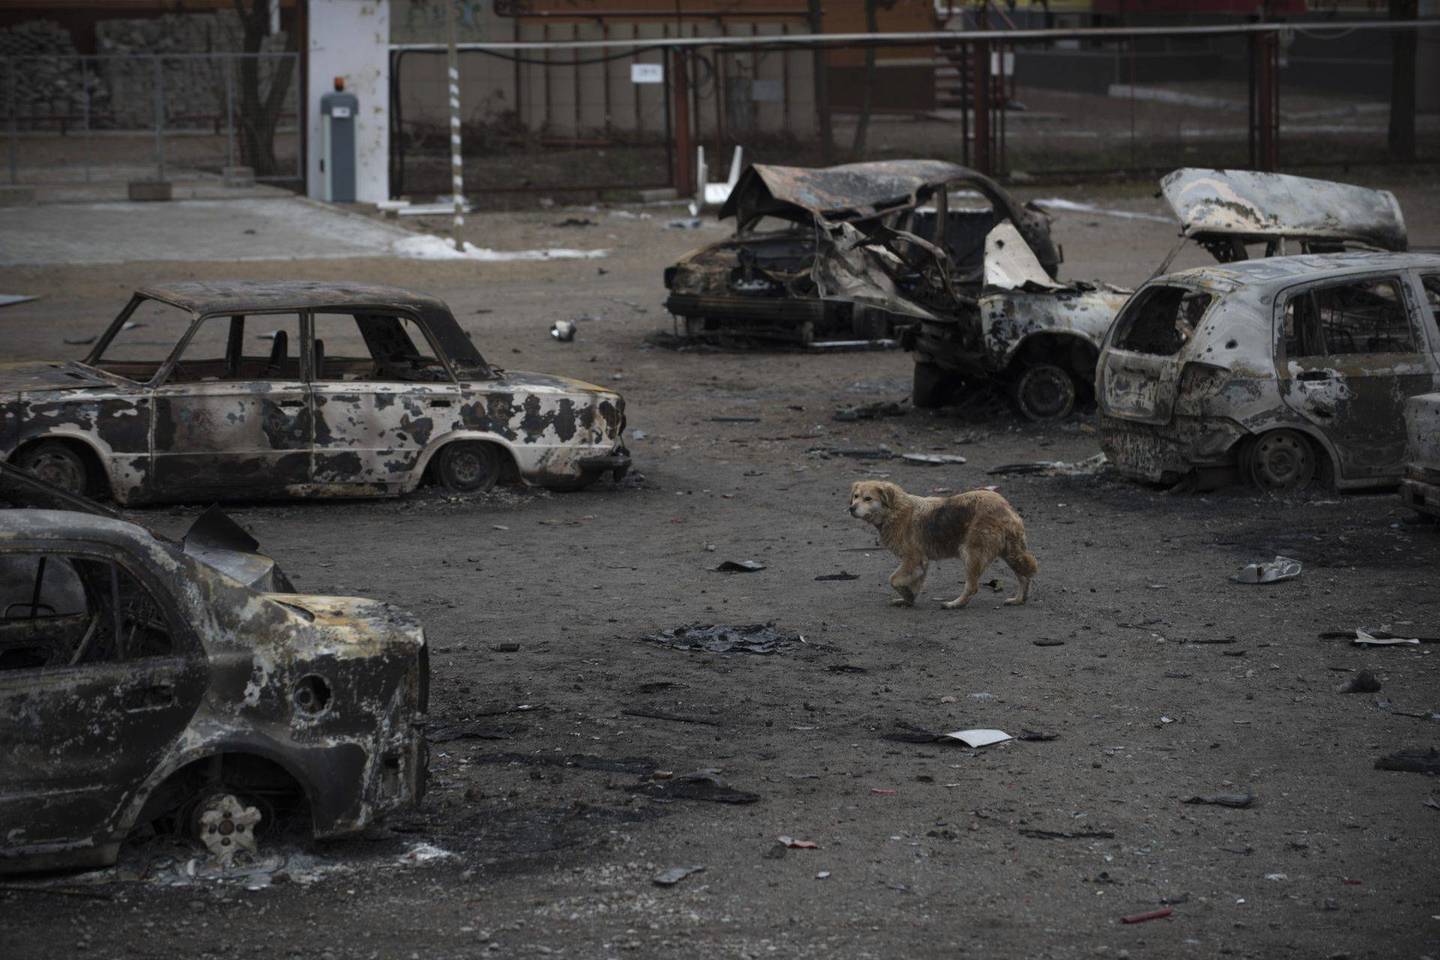 Rytų Ukraina virsta griuvėsiais.<br>AP nuotr. iš archyvo